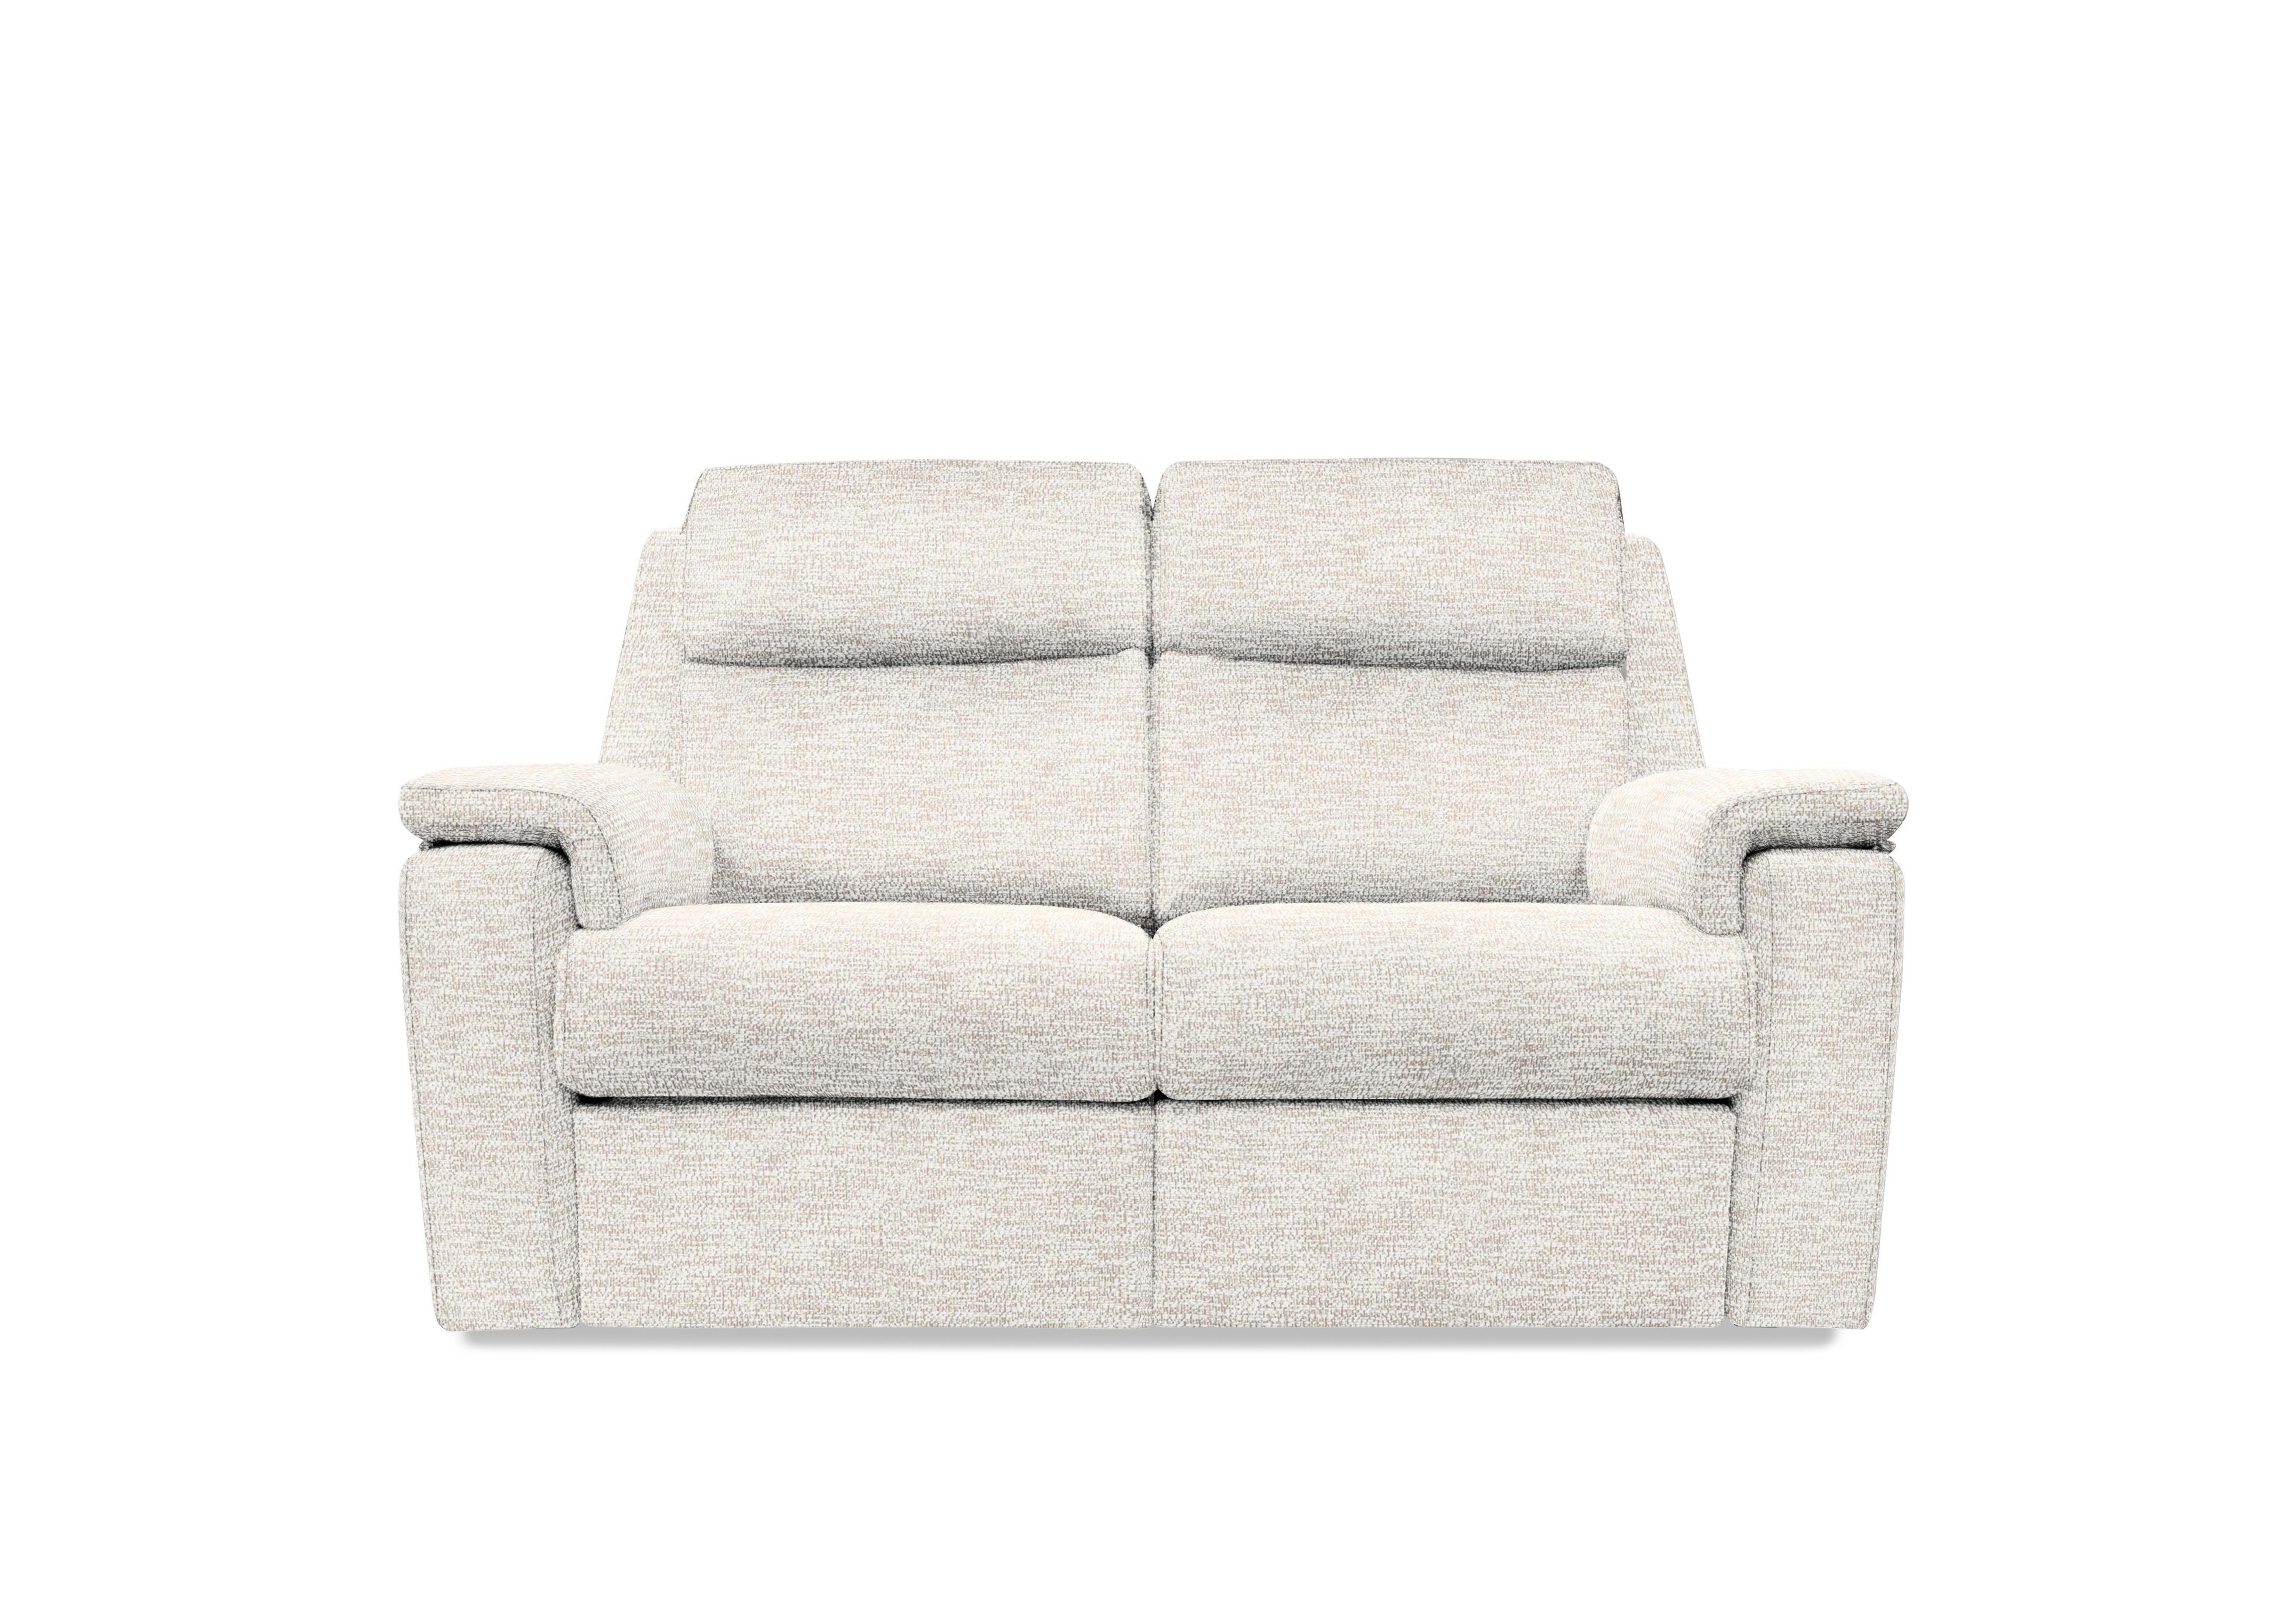 Thornbury 2 Seater Fabric Sofa in C931 Rush Cream on Furniture Village